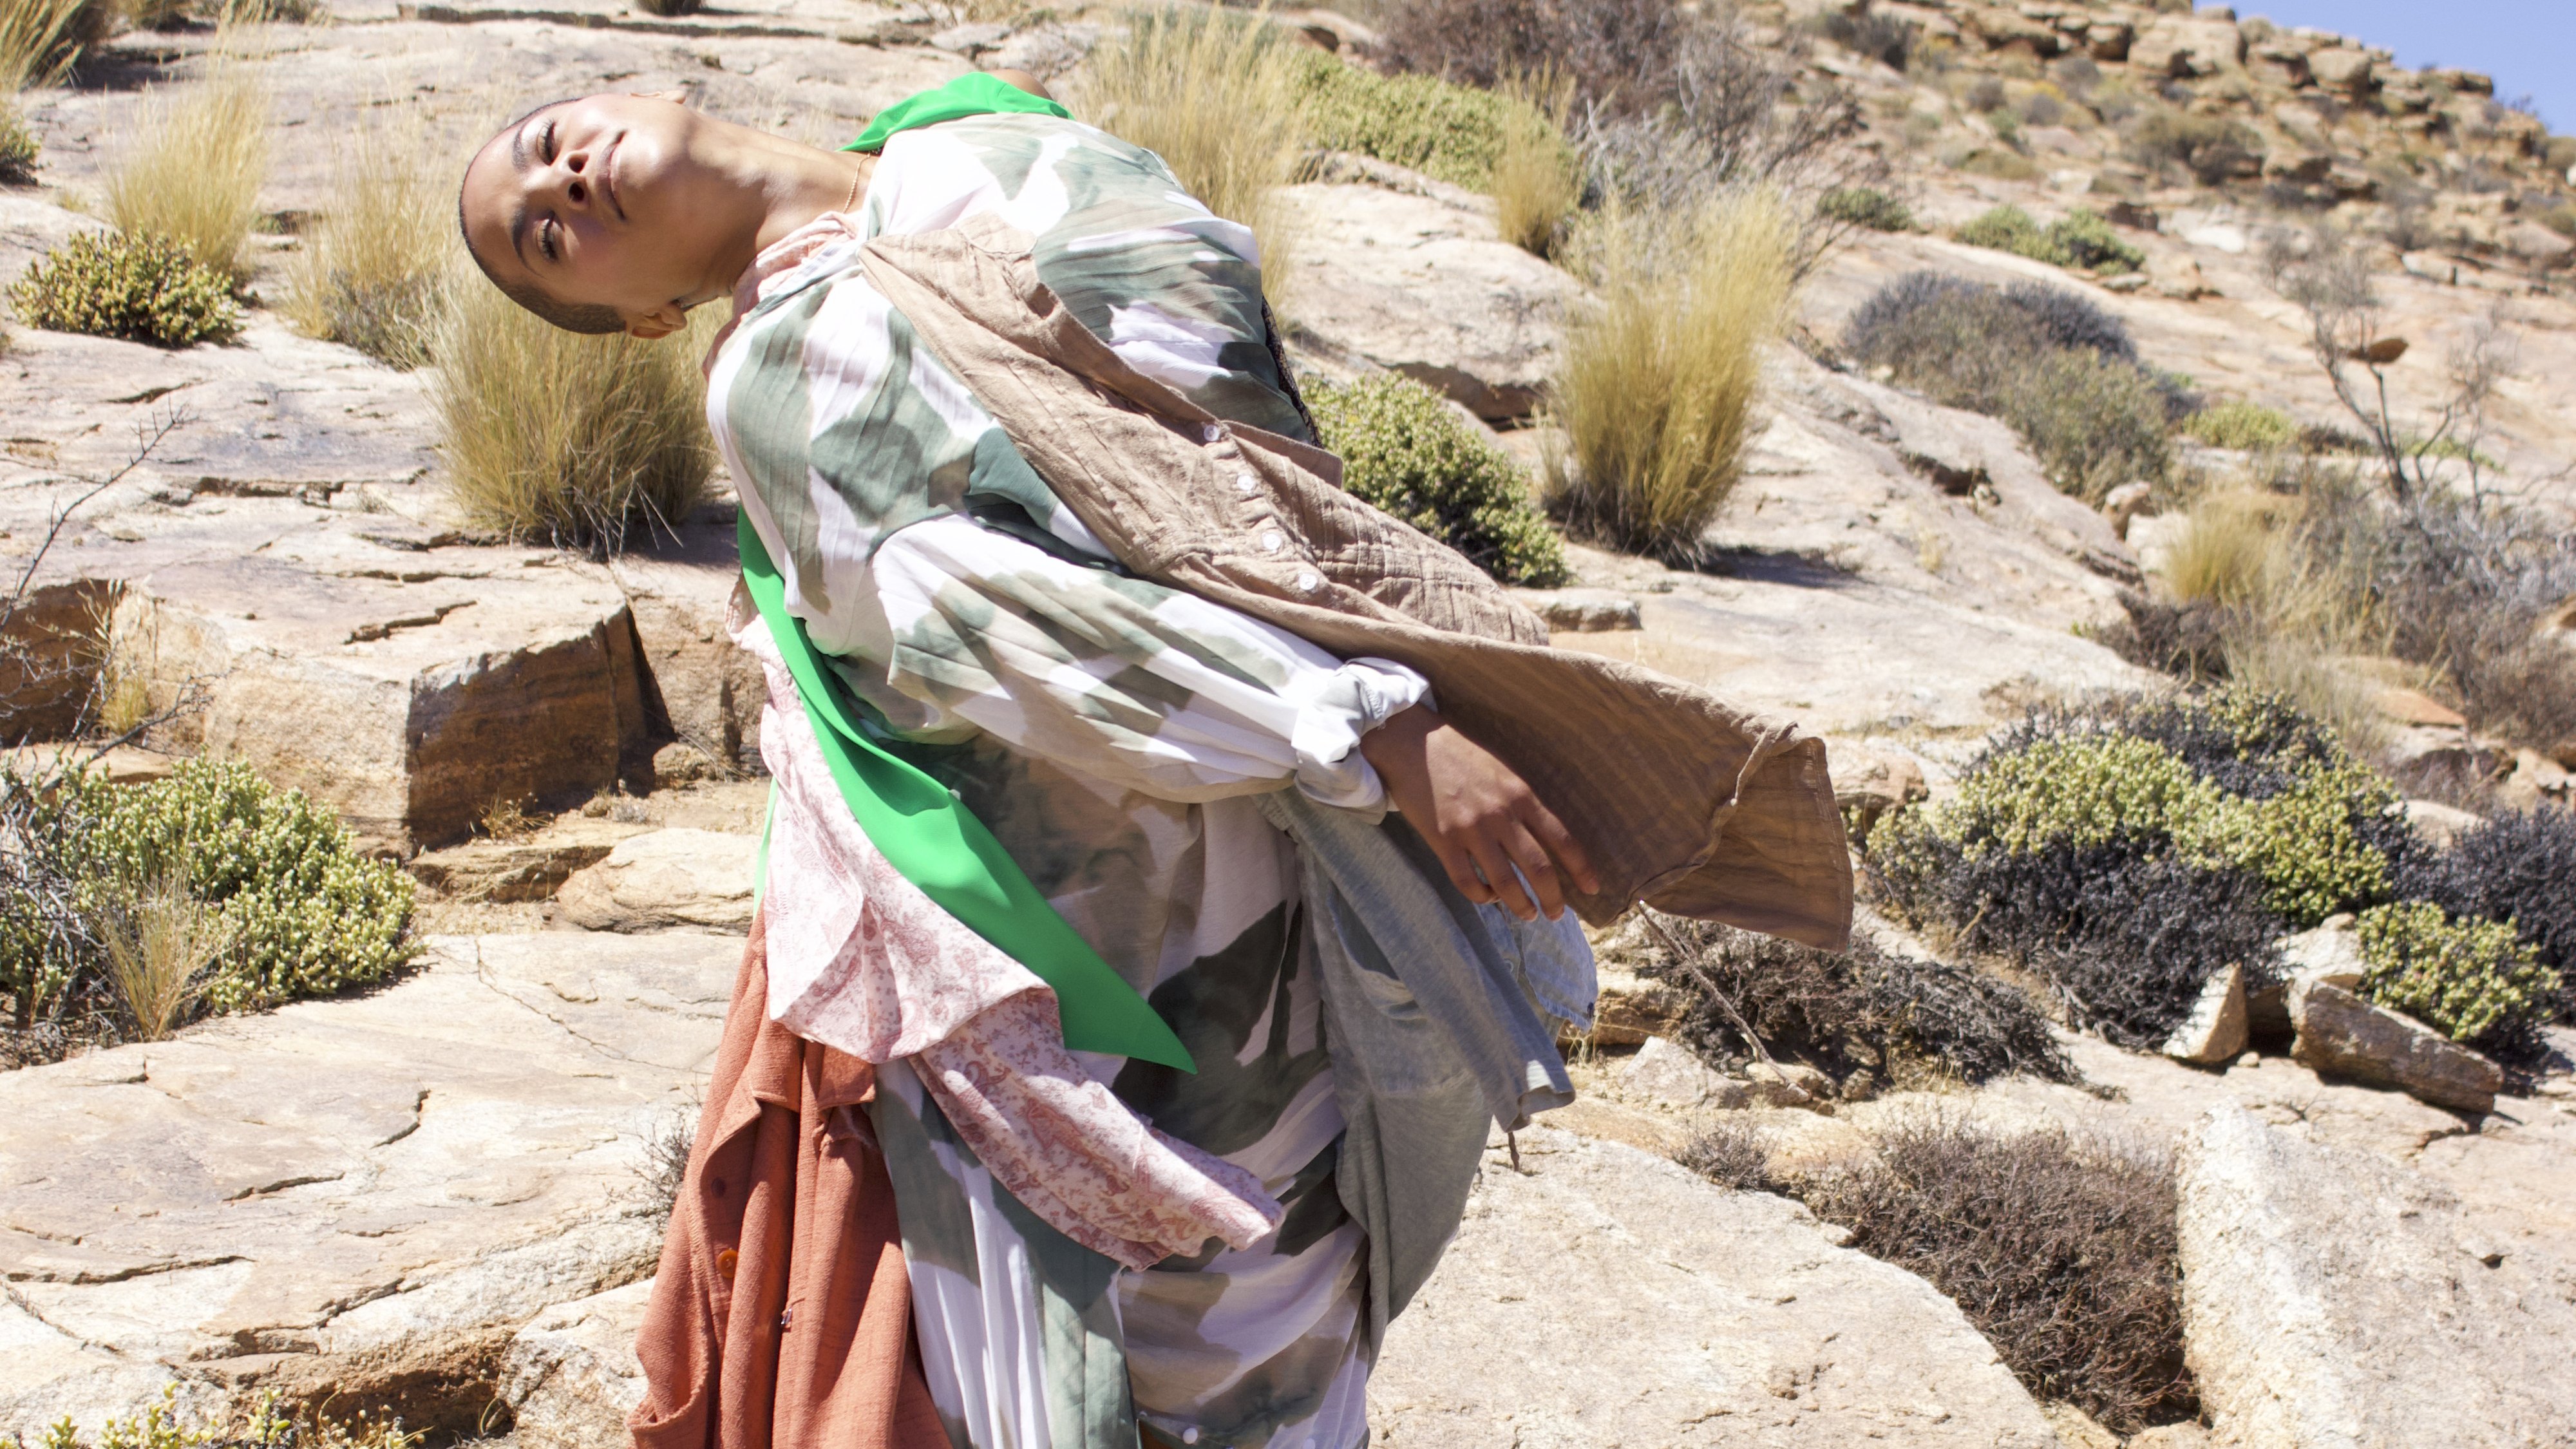 Danseur dans le desert en costume coloré.